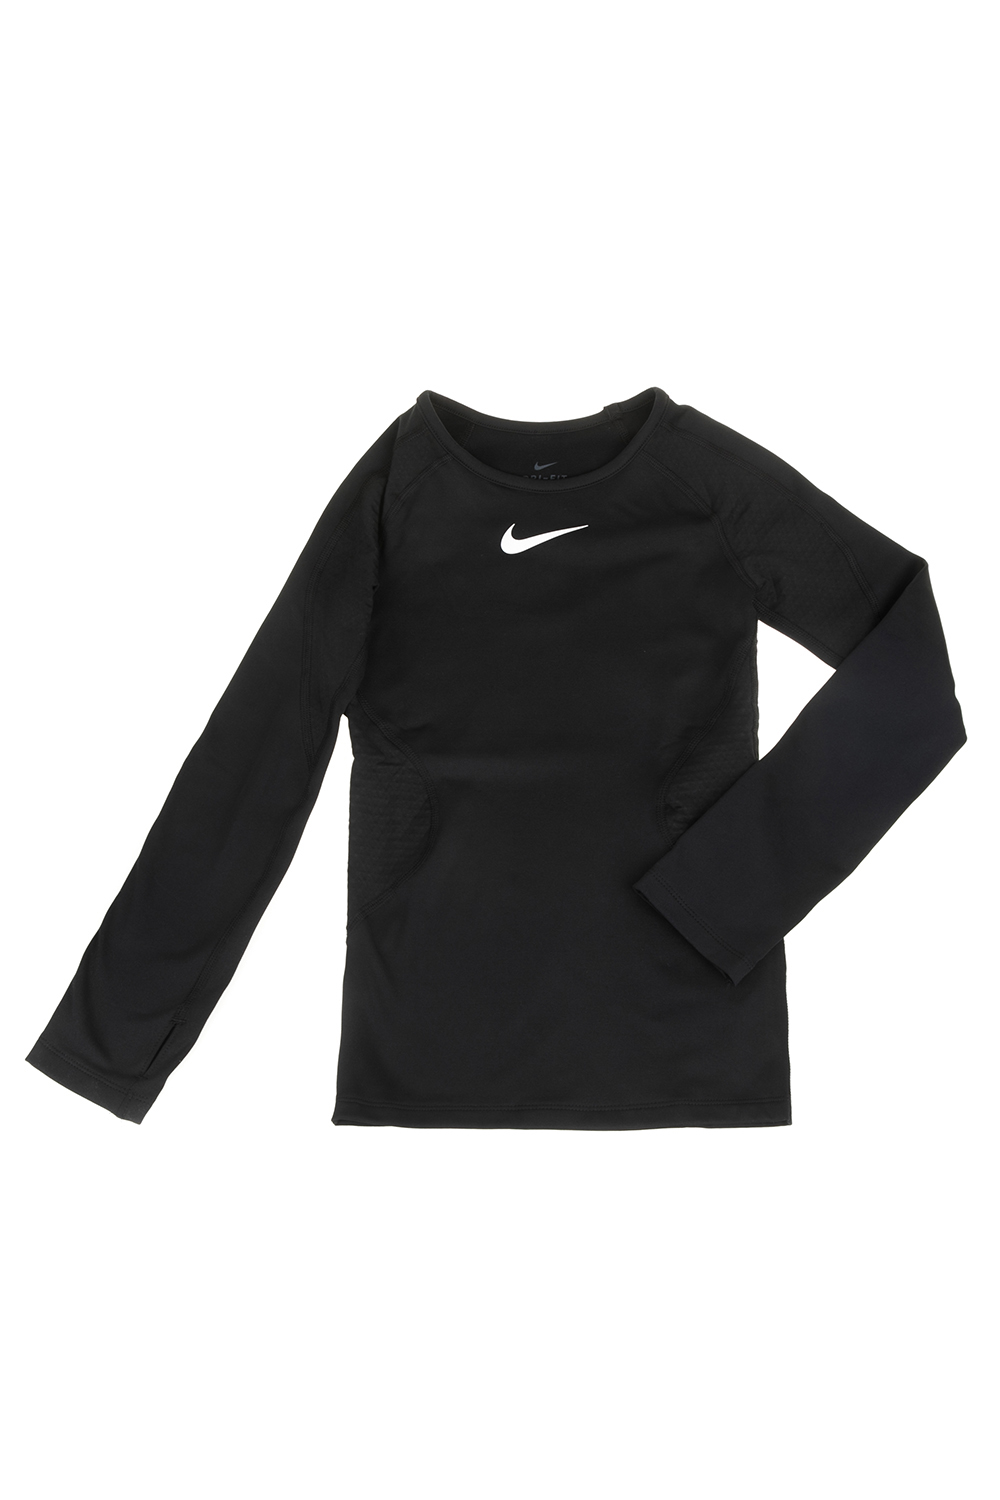 NIKE - Παιδική μακρυμάνικη μπλούζα NIKE NP WM TOP μαύρη Παιδικά/Girls/Ρούχα/Αθλητικά